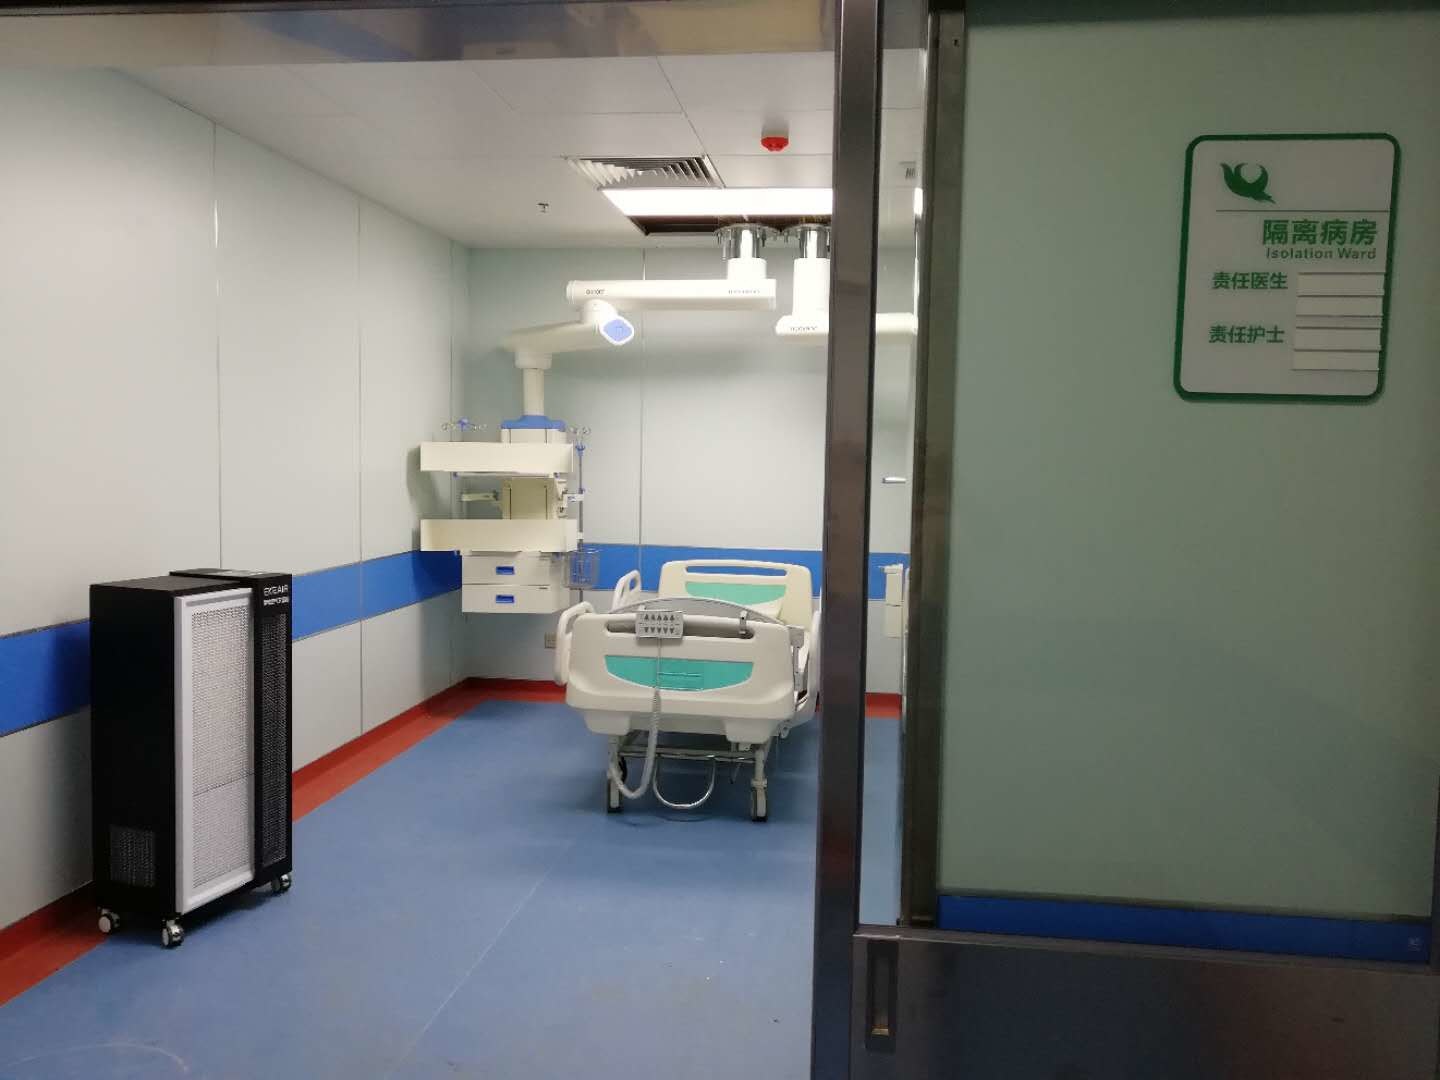 Laatste bedrijfscasus over Nieuwe Campus, het Vierde Ziekenhuis van de Medische Universiteit van Anhui